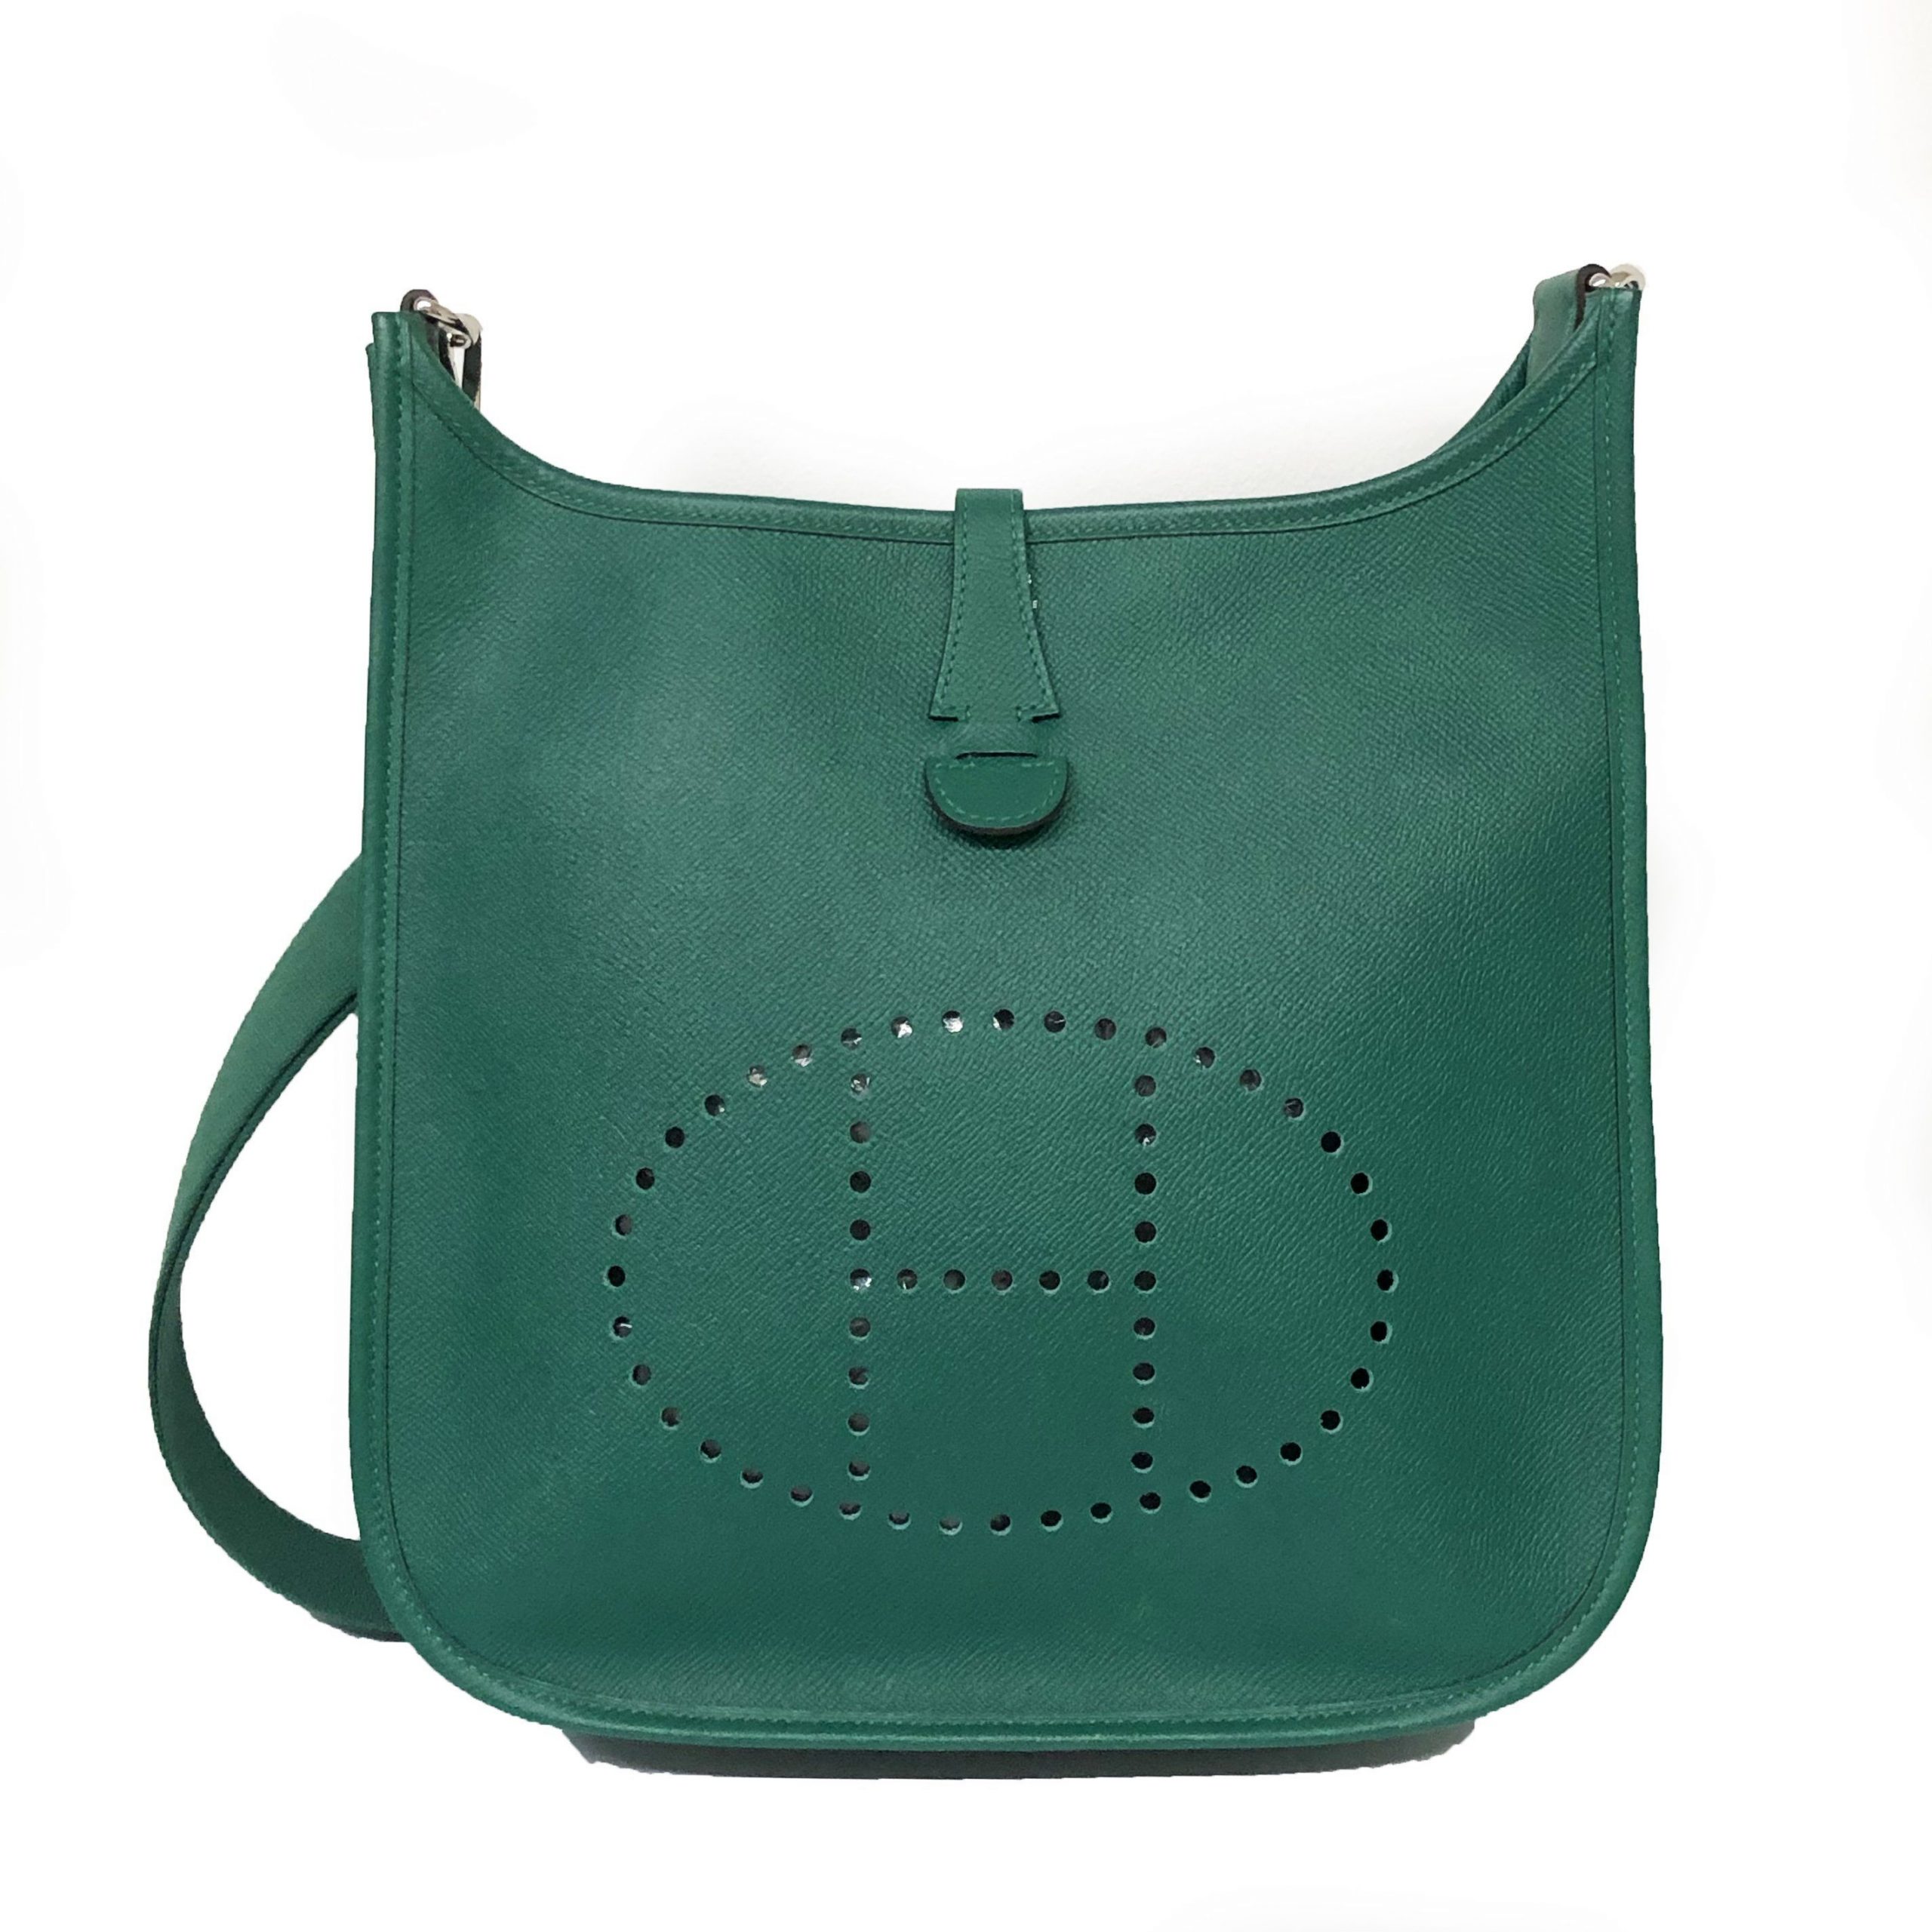 Hermes Green Epsom Leather Evelyn Handbag